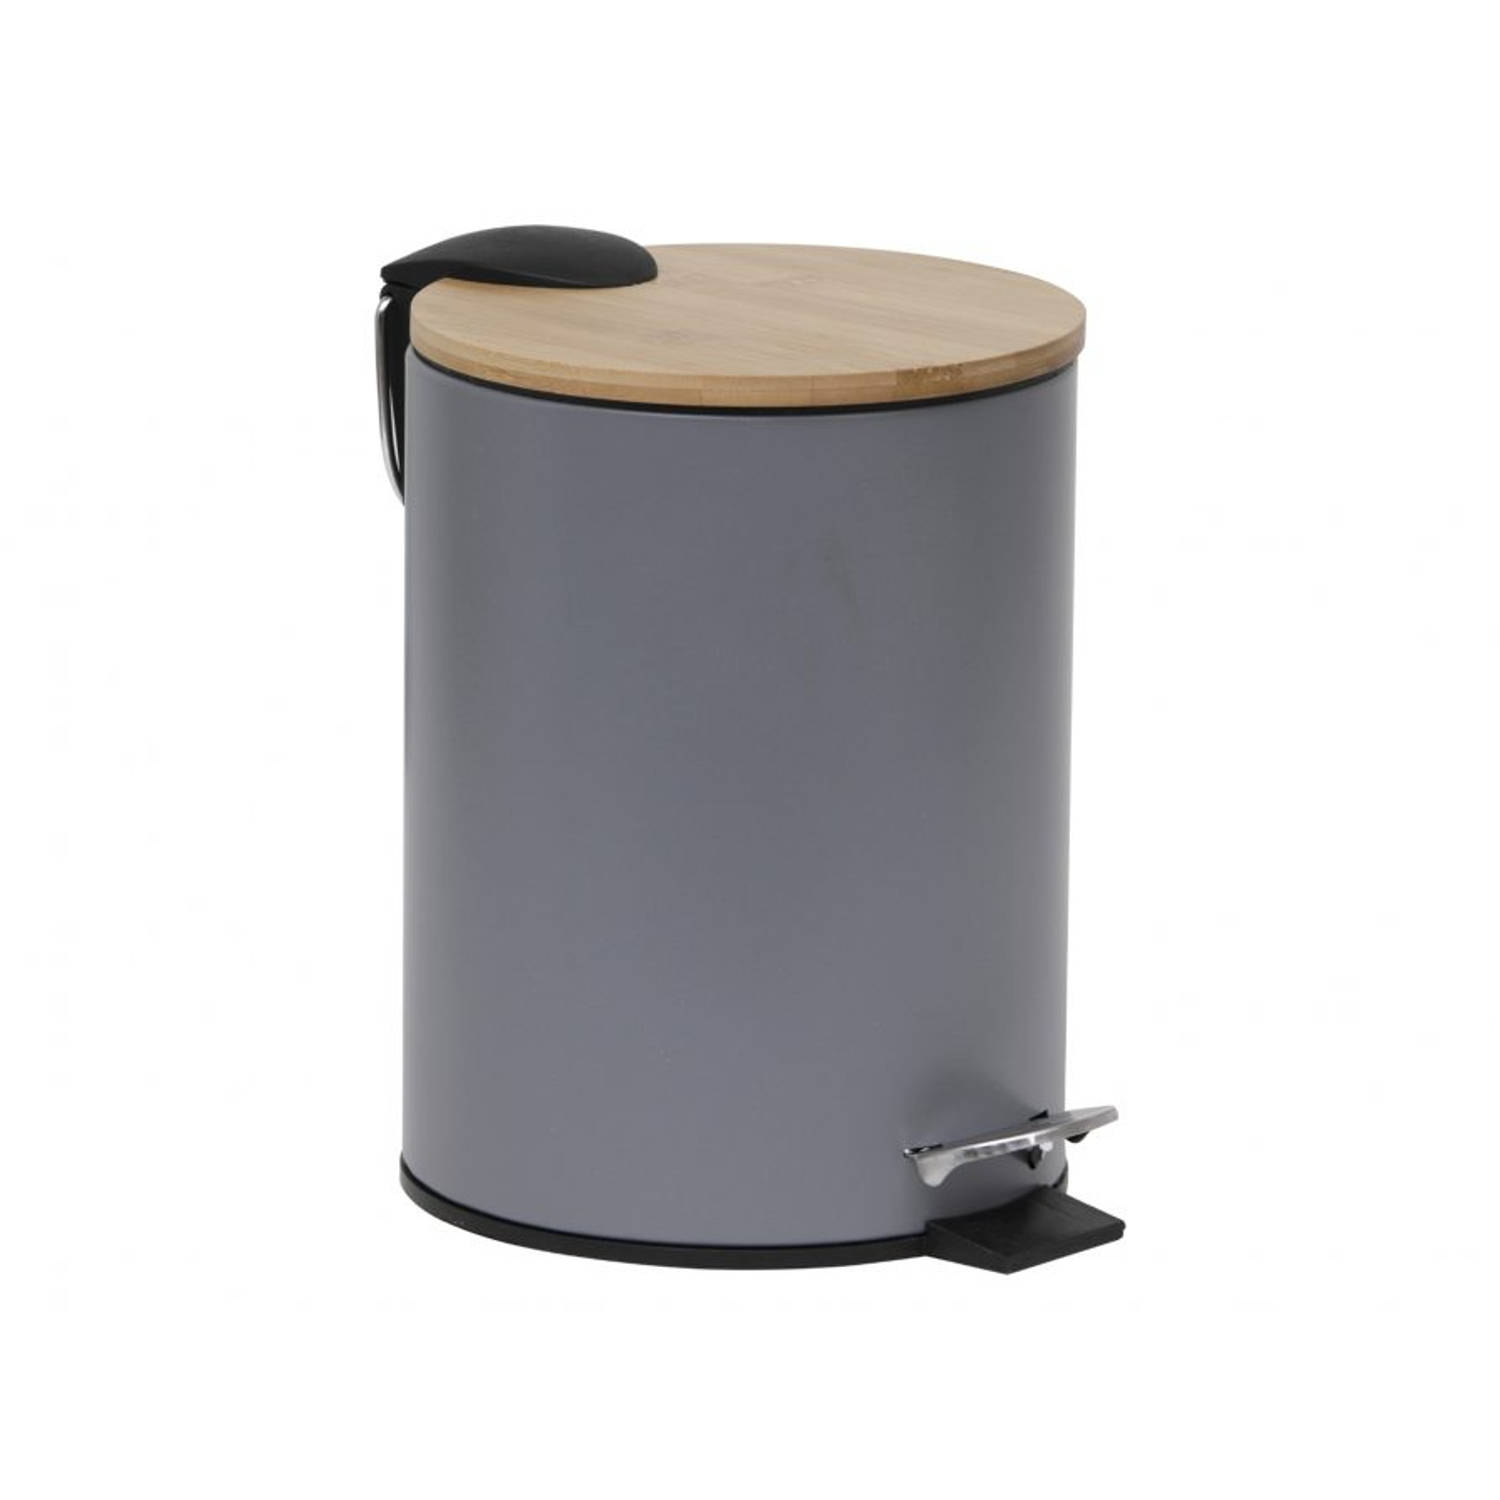 Gebor - Stijlvolle Design Prullenbak Met Bamboe Deksel - Grijs/bamboe - Klein Formaat - 2.5l - Badkamer - Toilet